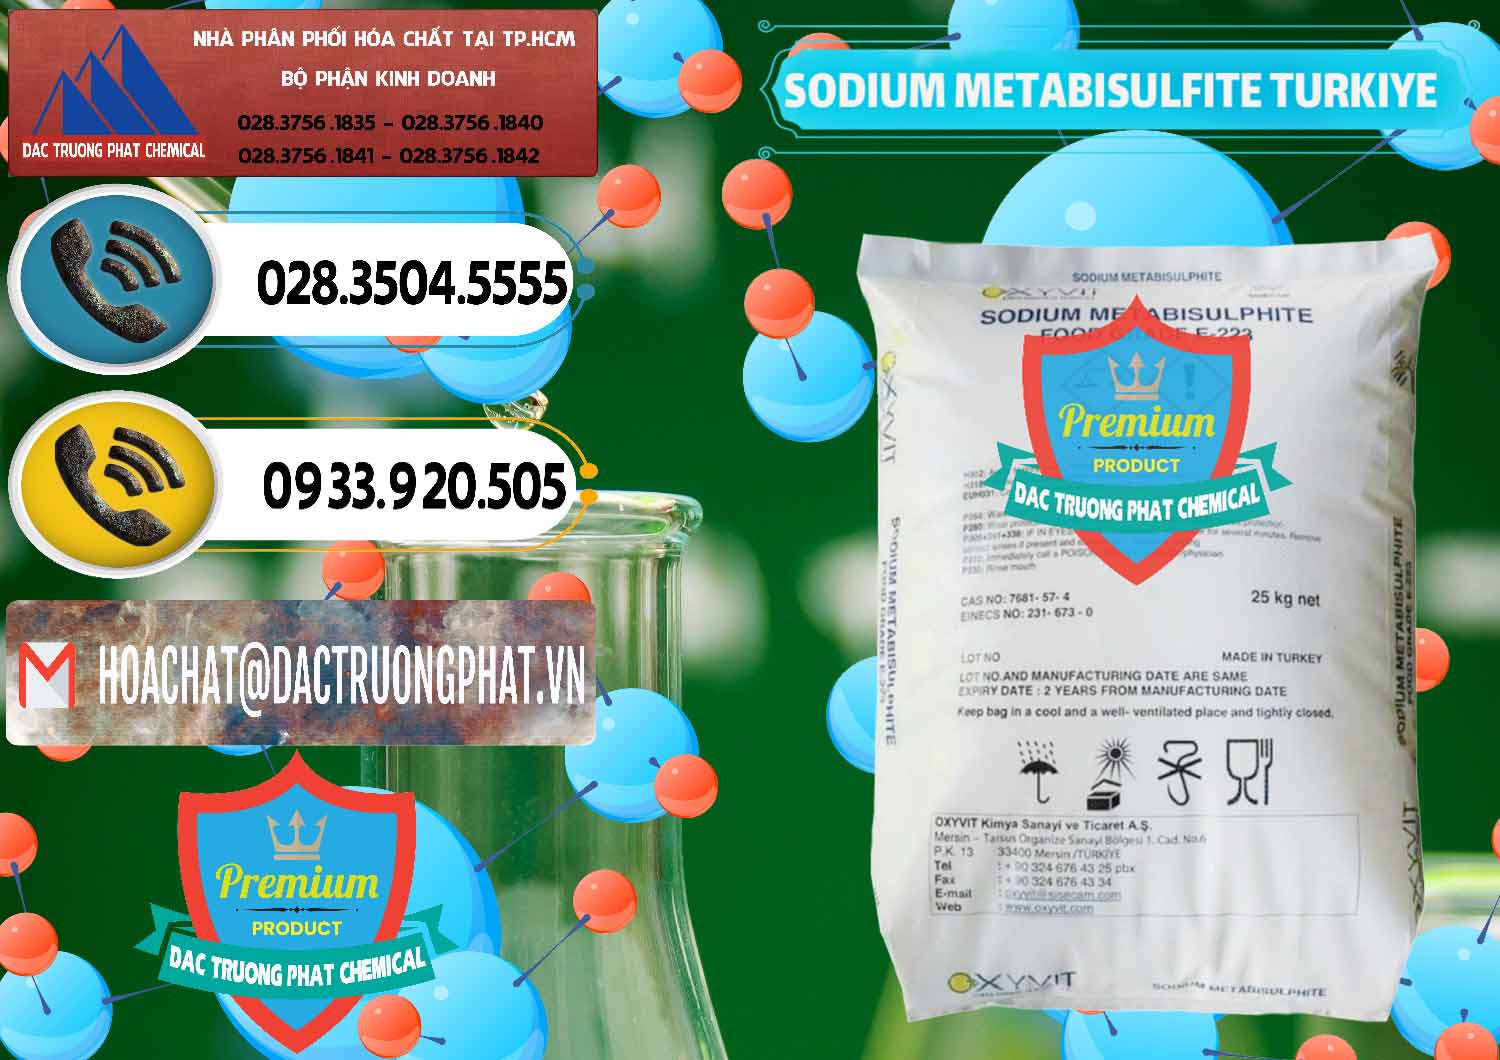 Cty phân phối ( bán ) Sodium Metabisulfite - NA2S2O5 Food Grade E-223 Thổ Nhĩ Kỳ Turkey - 0413 - Nơi chuyên kinh doanh _ phân phối hóa chất tại TP.HCM - hoachatdetnhuom.vn